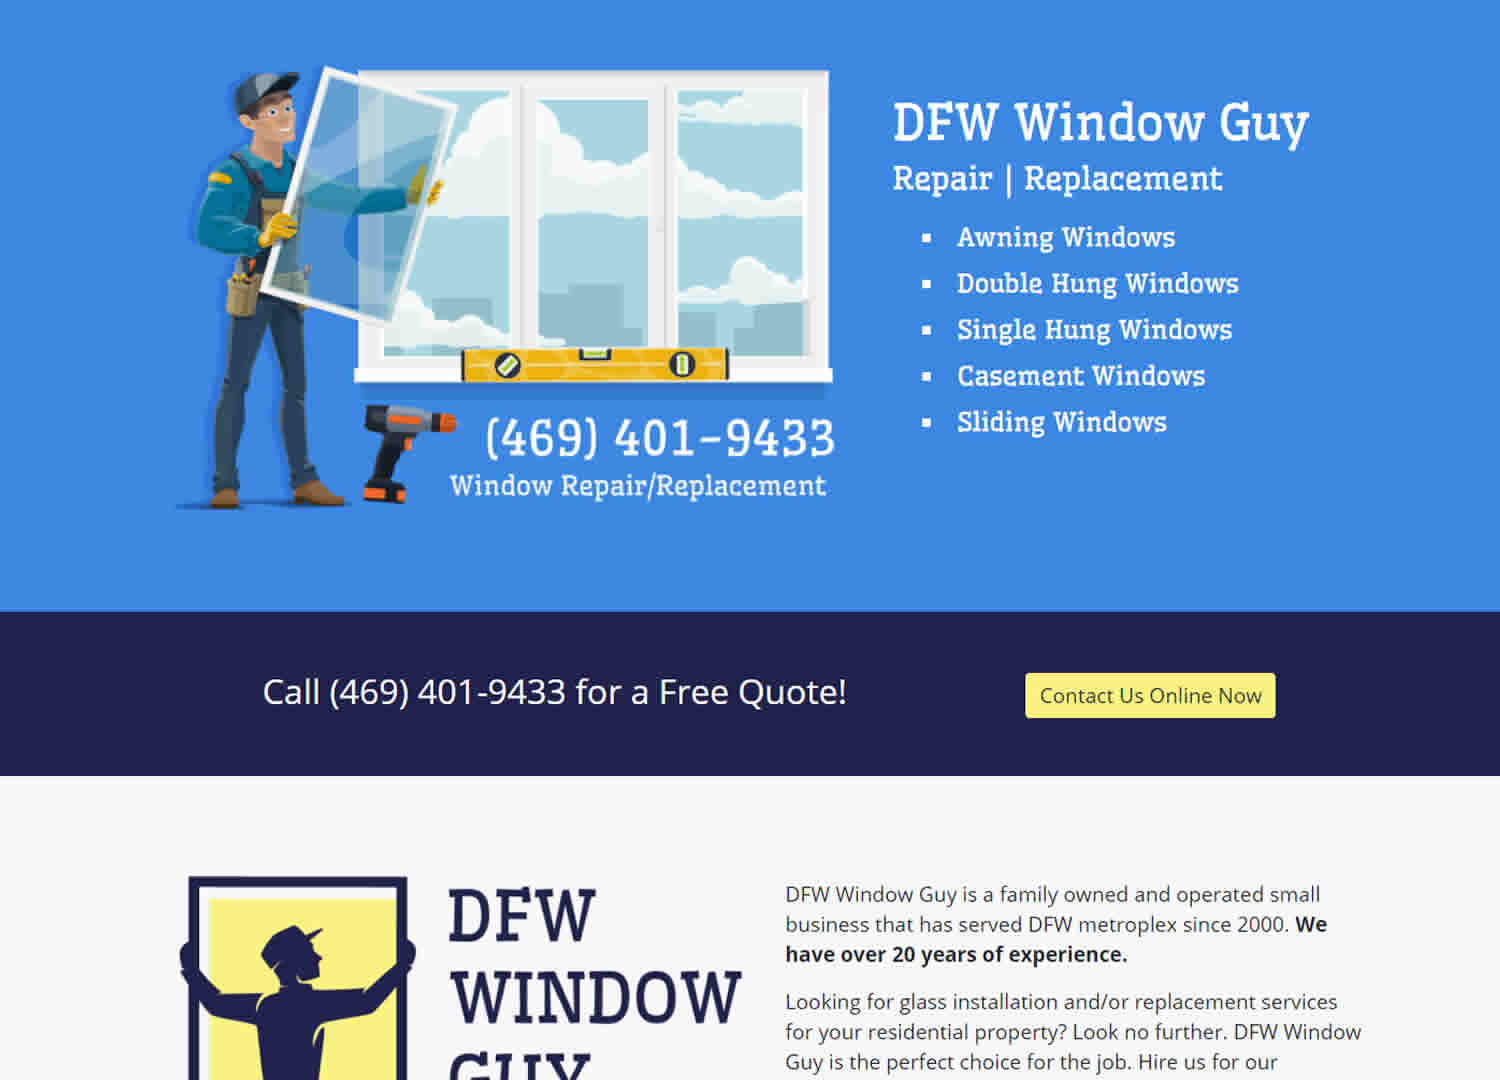 DFW Window Guy